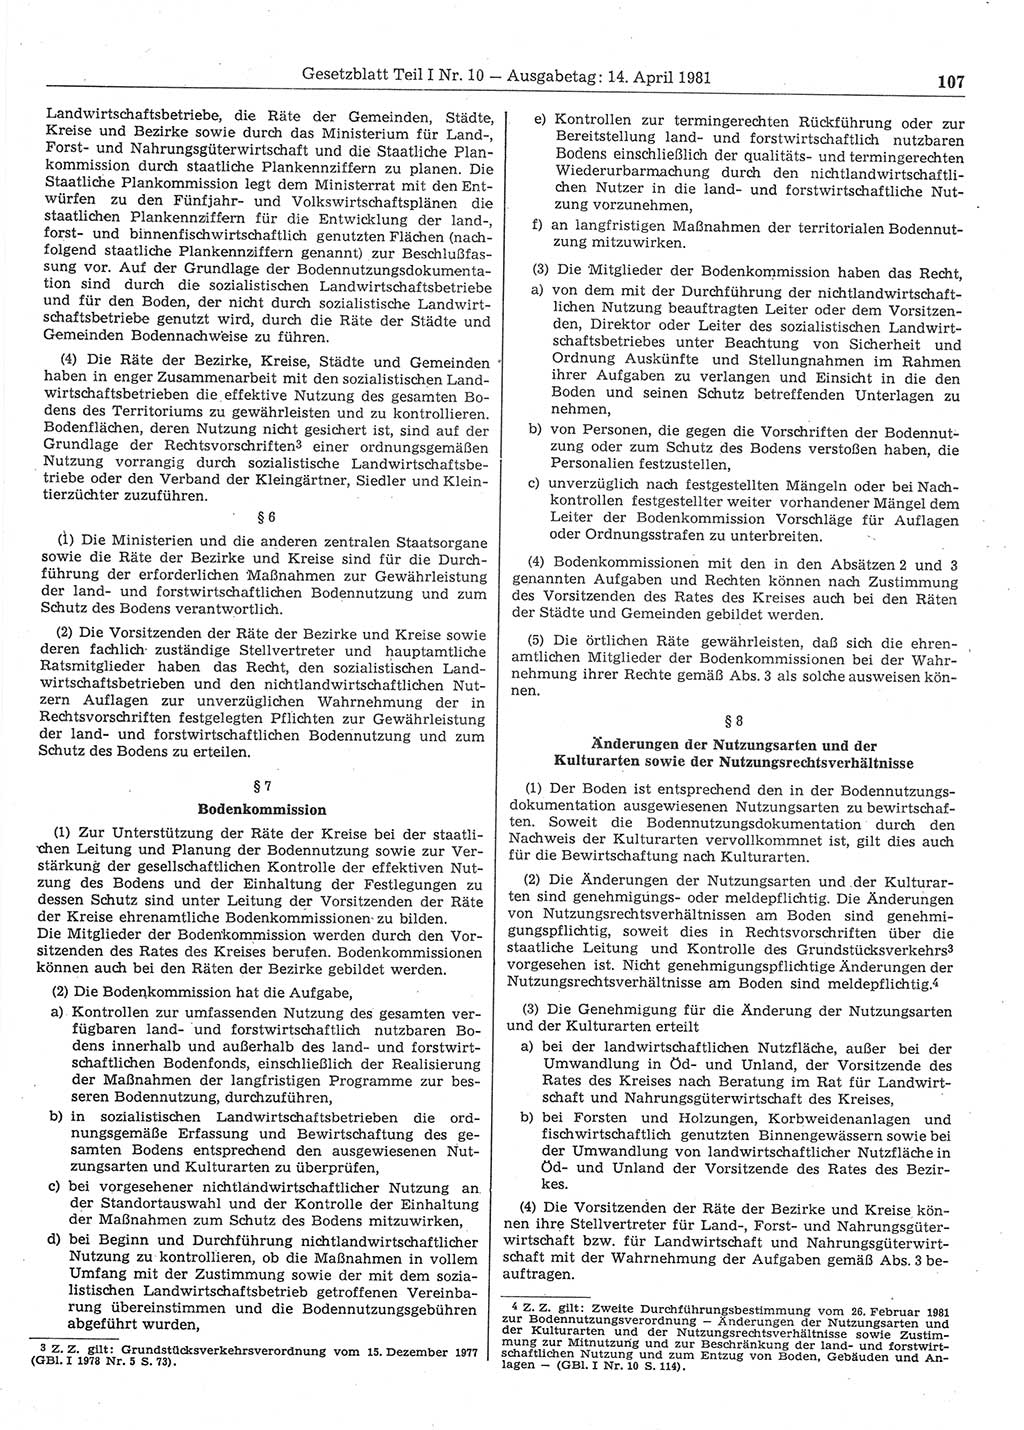 Gesetzblatt (GBl.) der Deutschen Demokratischen Republik (DDR) Teil Ⅰ 1981, Seite 107 (GBl. DDR Ⅰ 1981, S. 107)